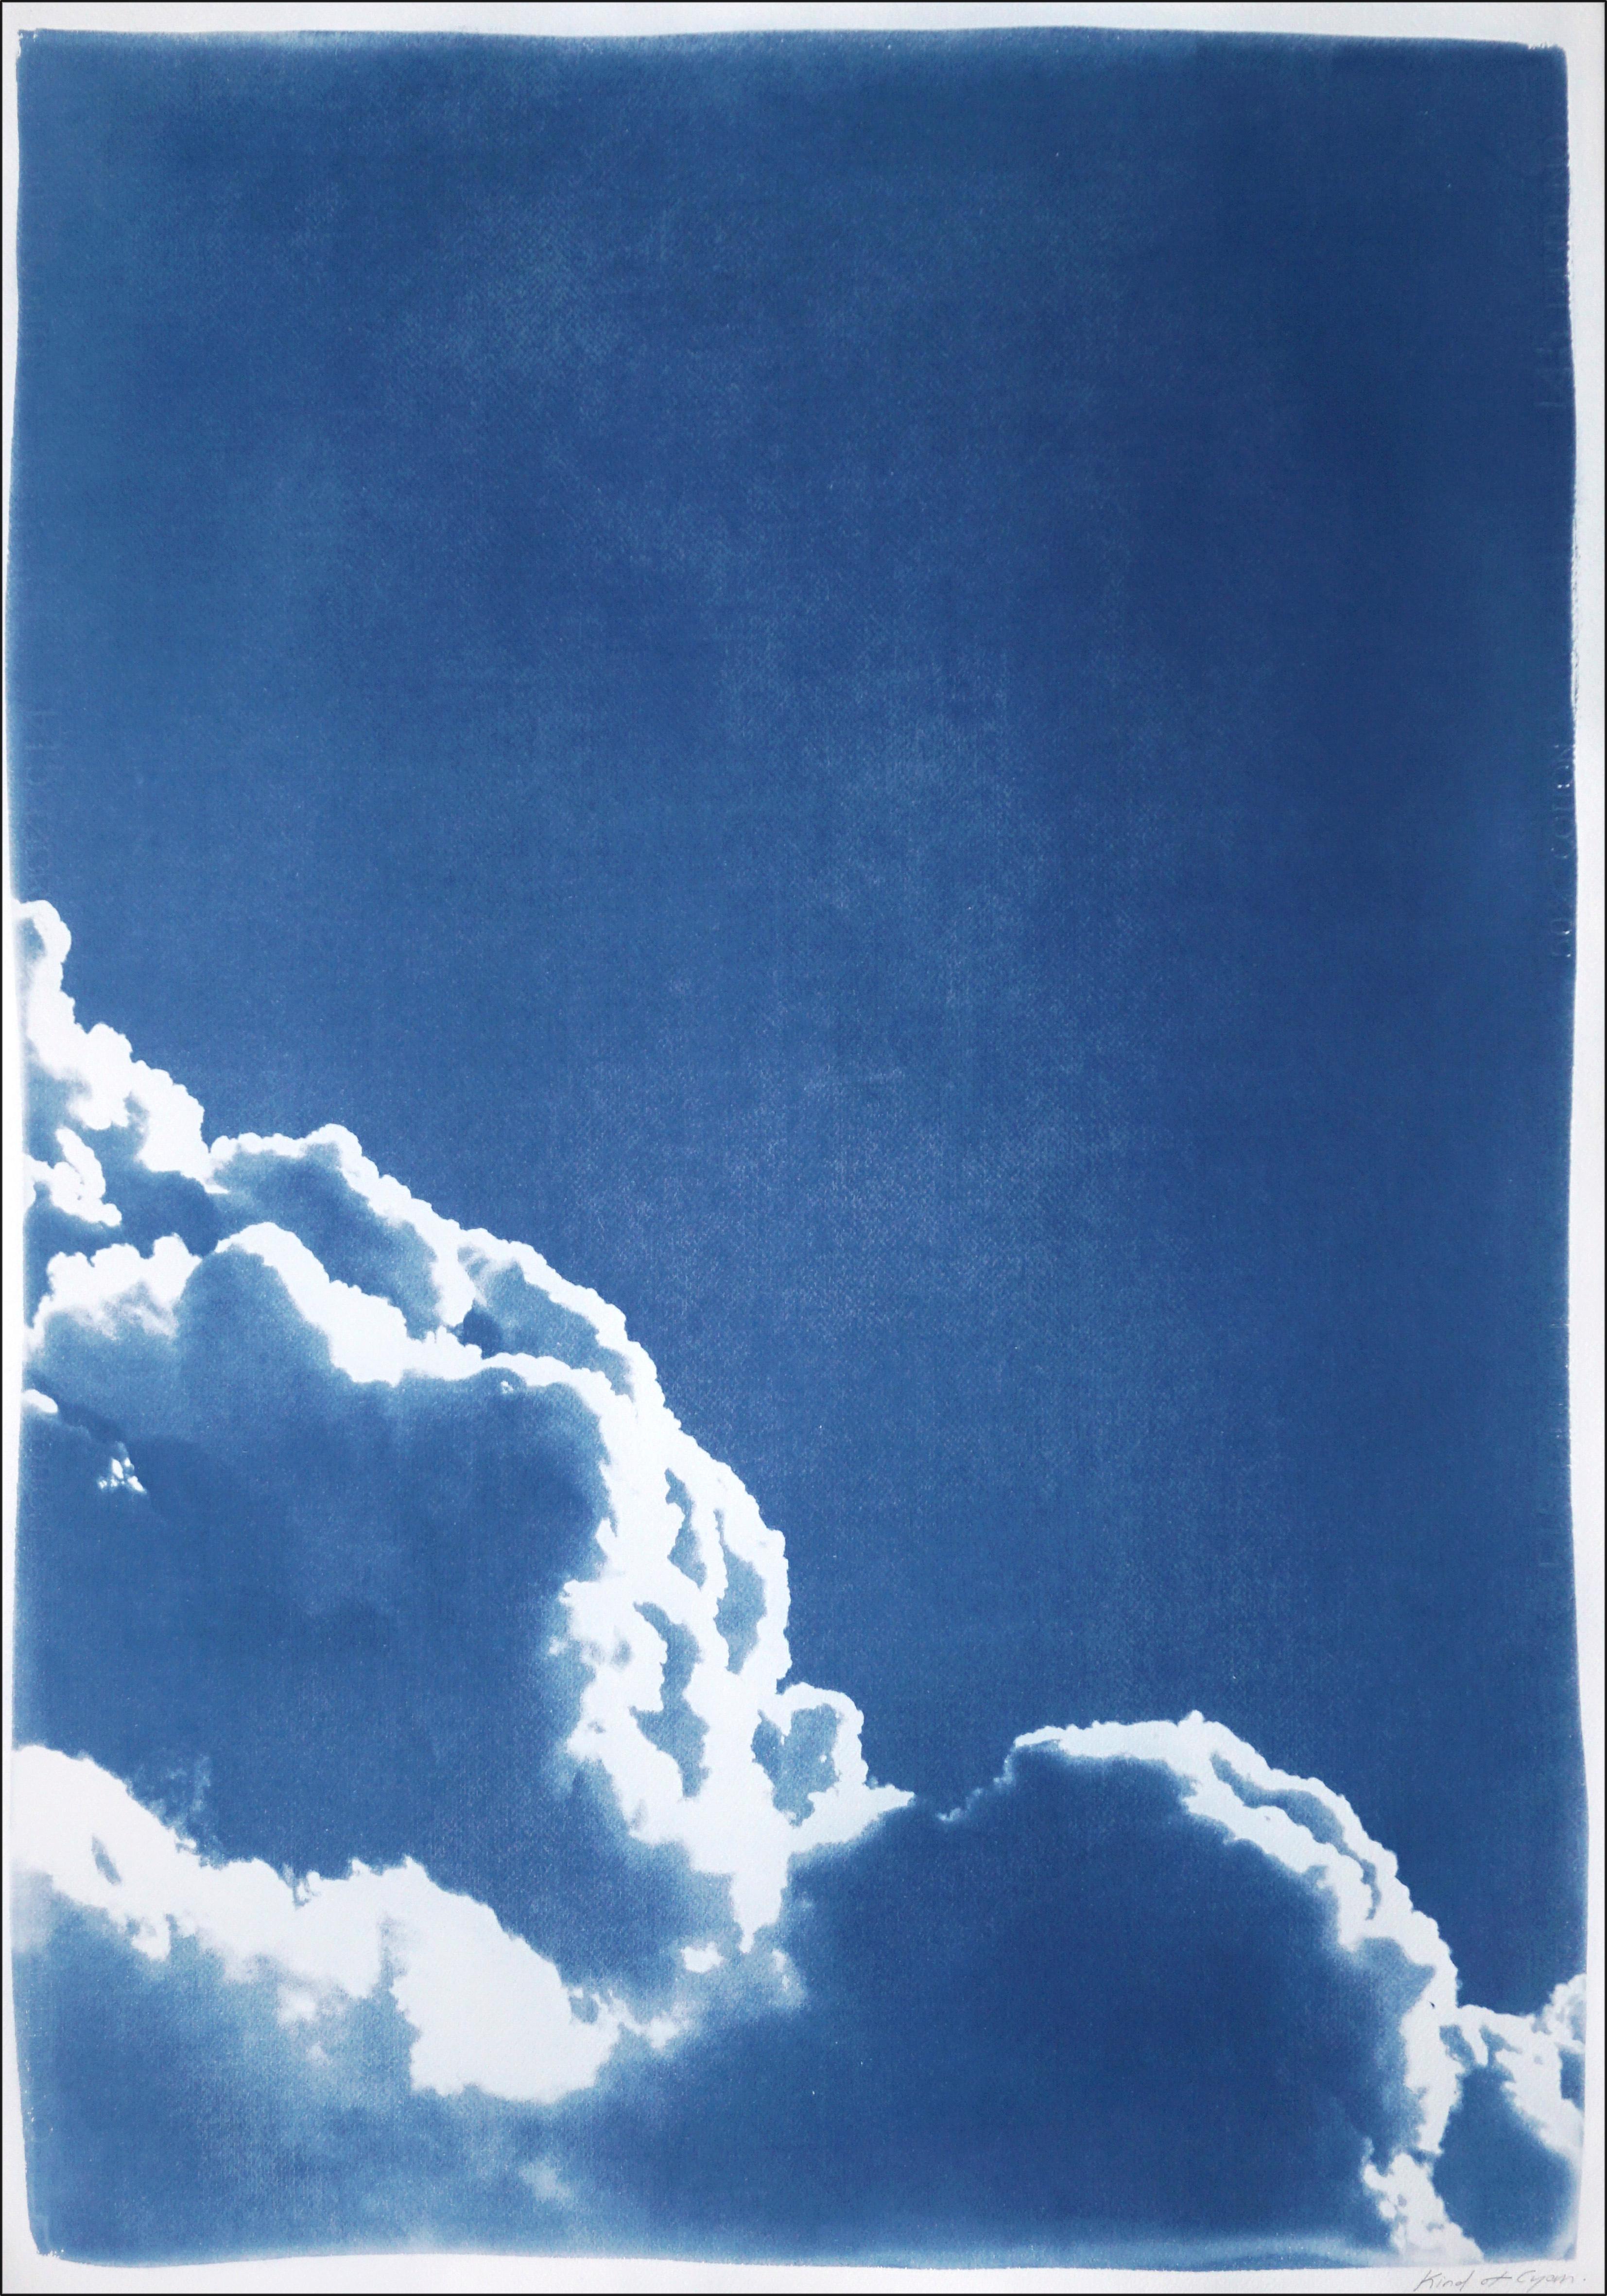 Dies ist ein exklusives handgedrucktes Cyanotypie-Diptychon mit schaumigen, wunderschönen Wolken in limitierter Auflage.

Einzelheiten:
+ Titel: Schwebende Wolken Diptychon
+ Jahr: 2023
+ Auflagenhöhe: 20
+ Gestempelt und mit Echtheitszertifikat